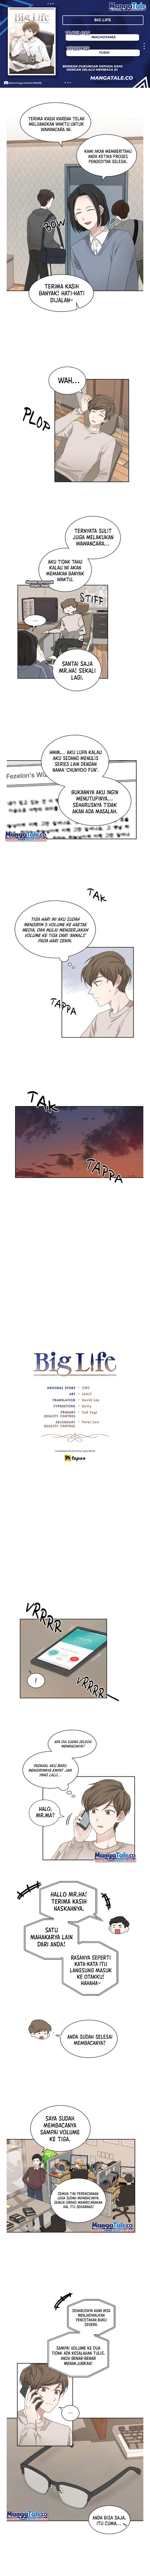 Big Life Chapter 17 - 31